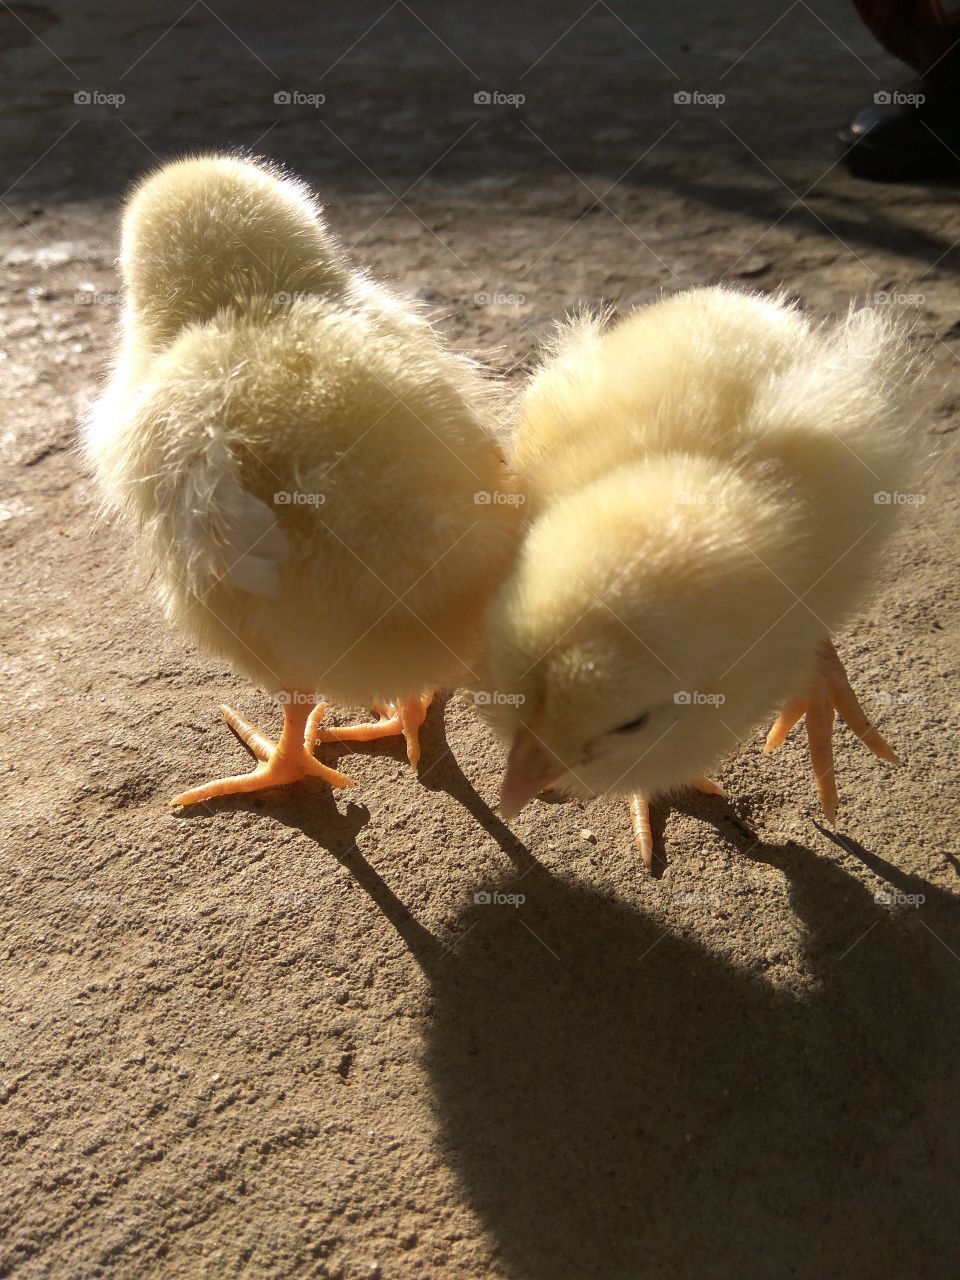 Cute baby chicks